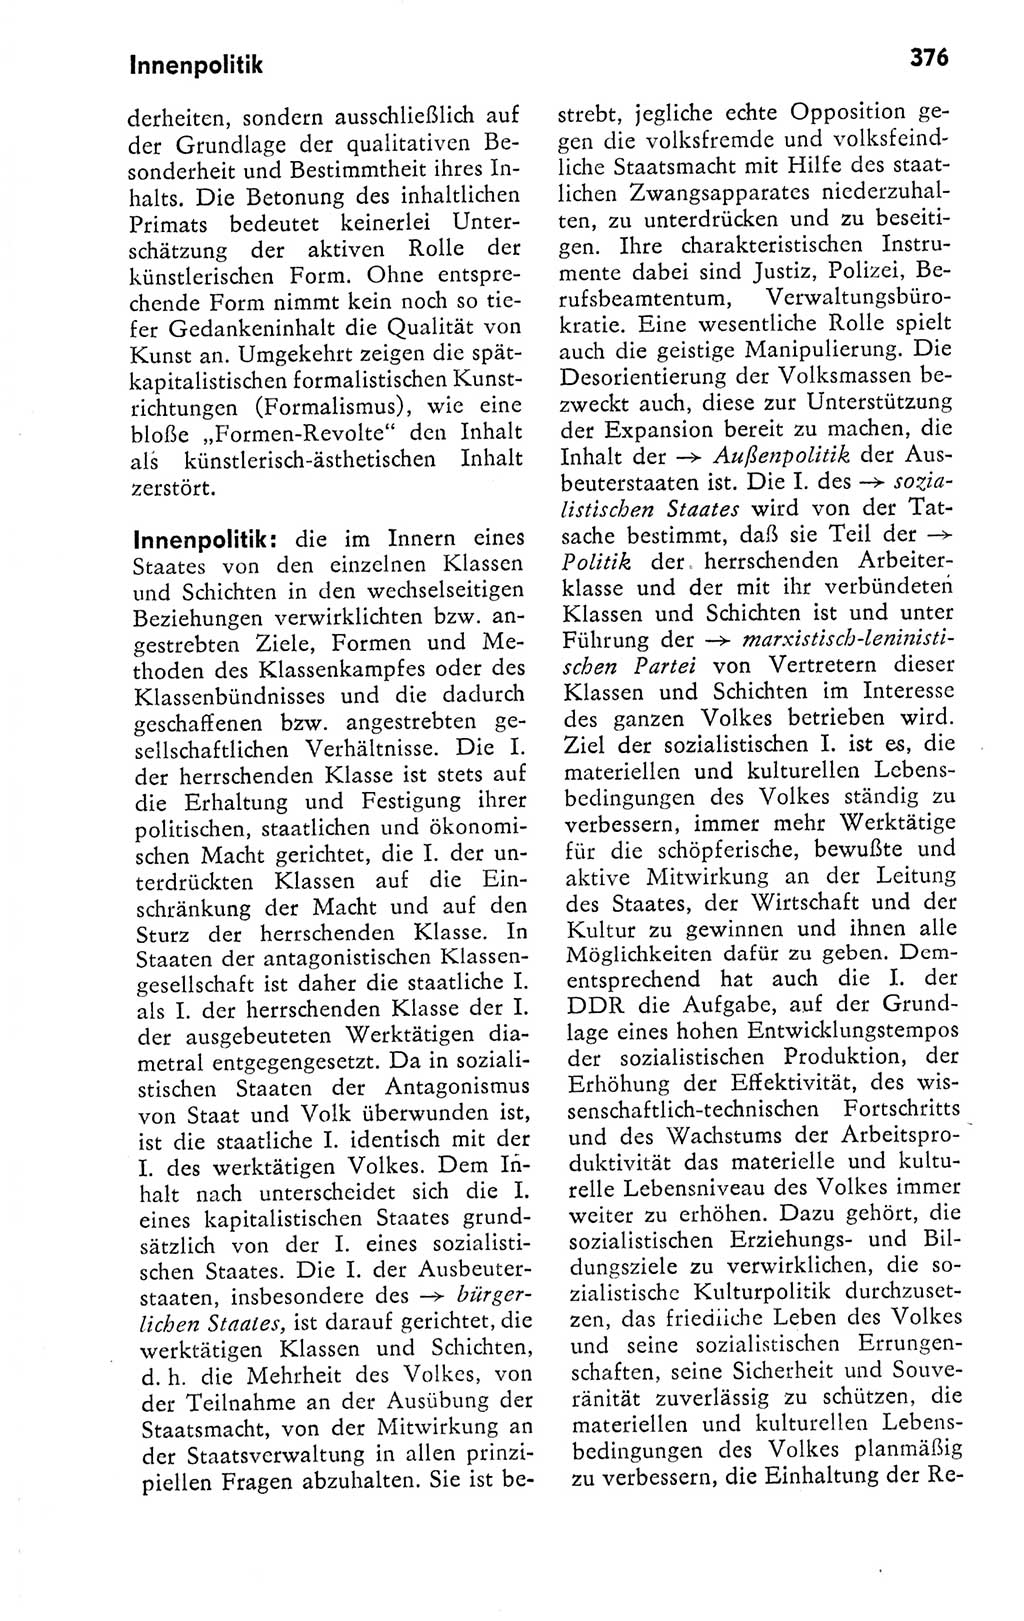 Kleines politisches Wörterbuch [Deutsche Demokratische Republik (DDR)] 1978, Seite 376 (Kl. pol. Wb. DDR 1978, S. 376)